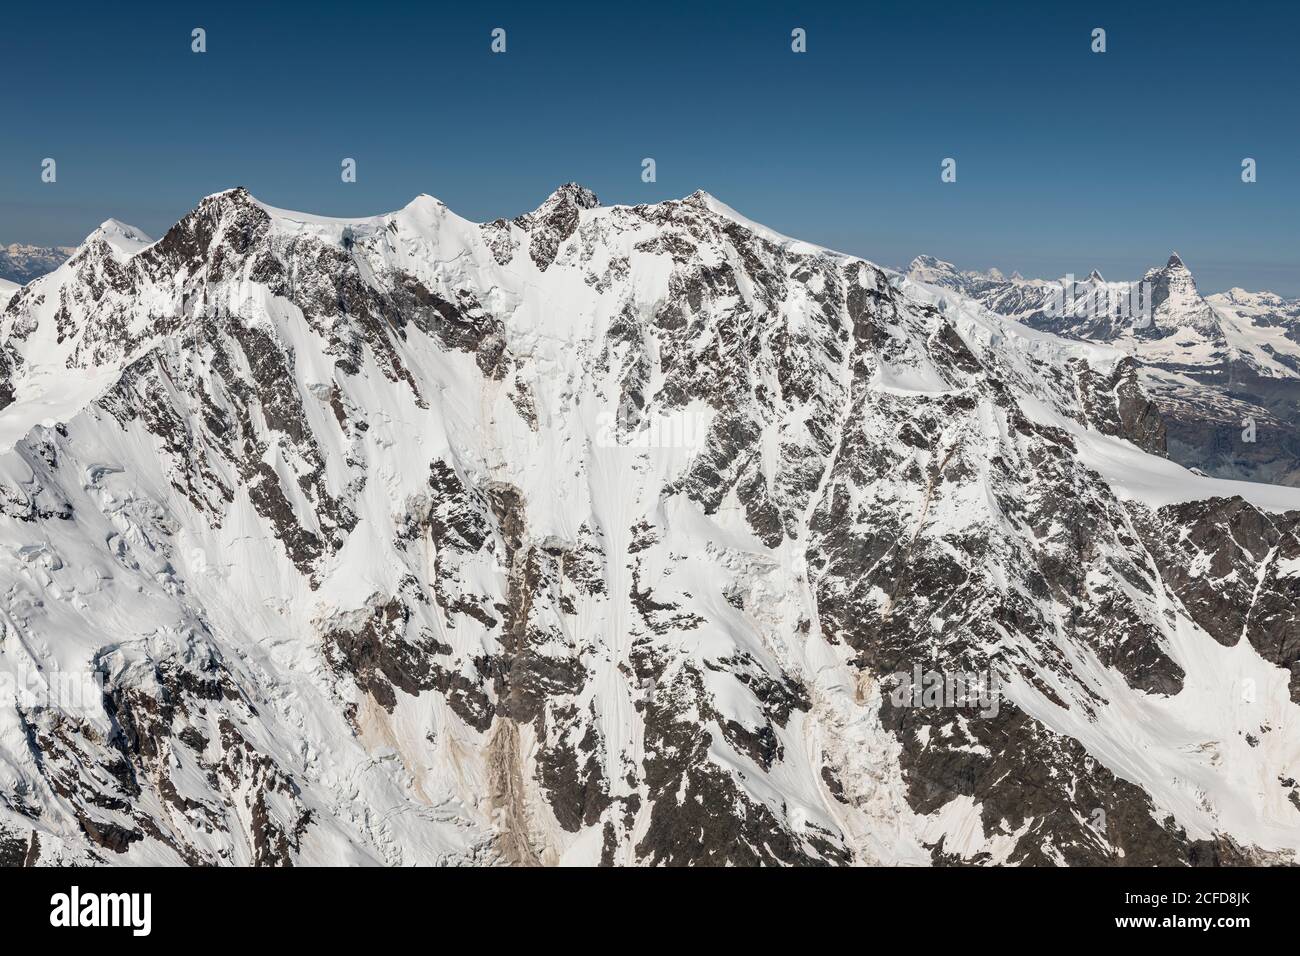 Italie, Piémont, Suisse, Canton du Valais, face est du massif de Monte Rosa, en arrière-plan Grand Combin, Dent d'Herens et Matterhorn Banque D'Images